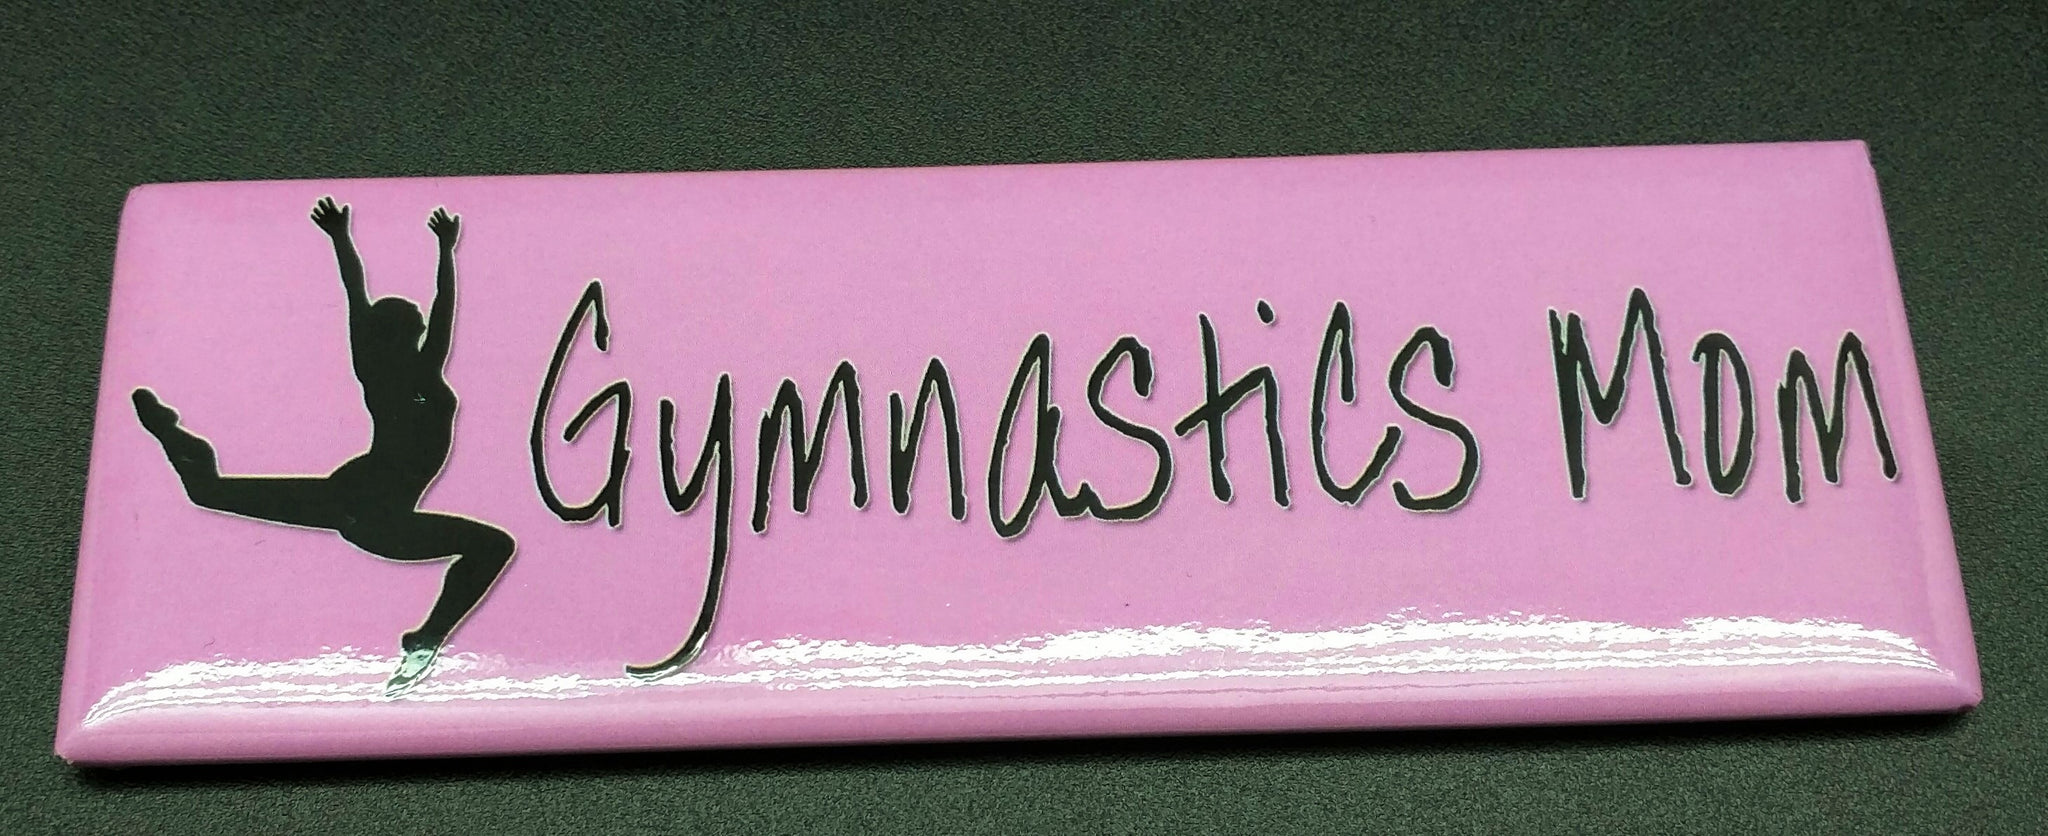 gymnastics mom magnet